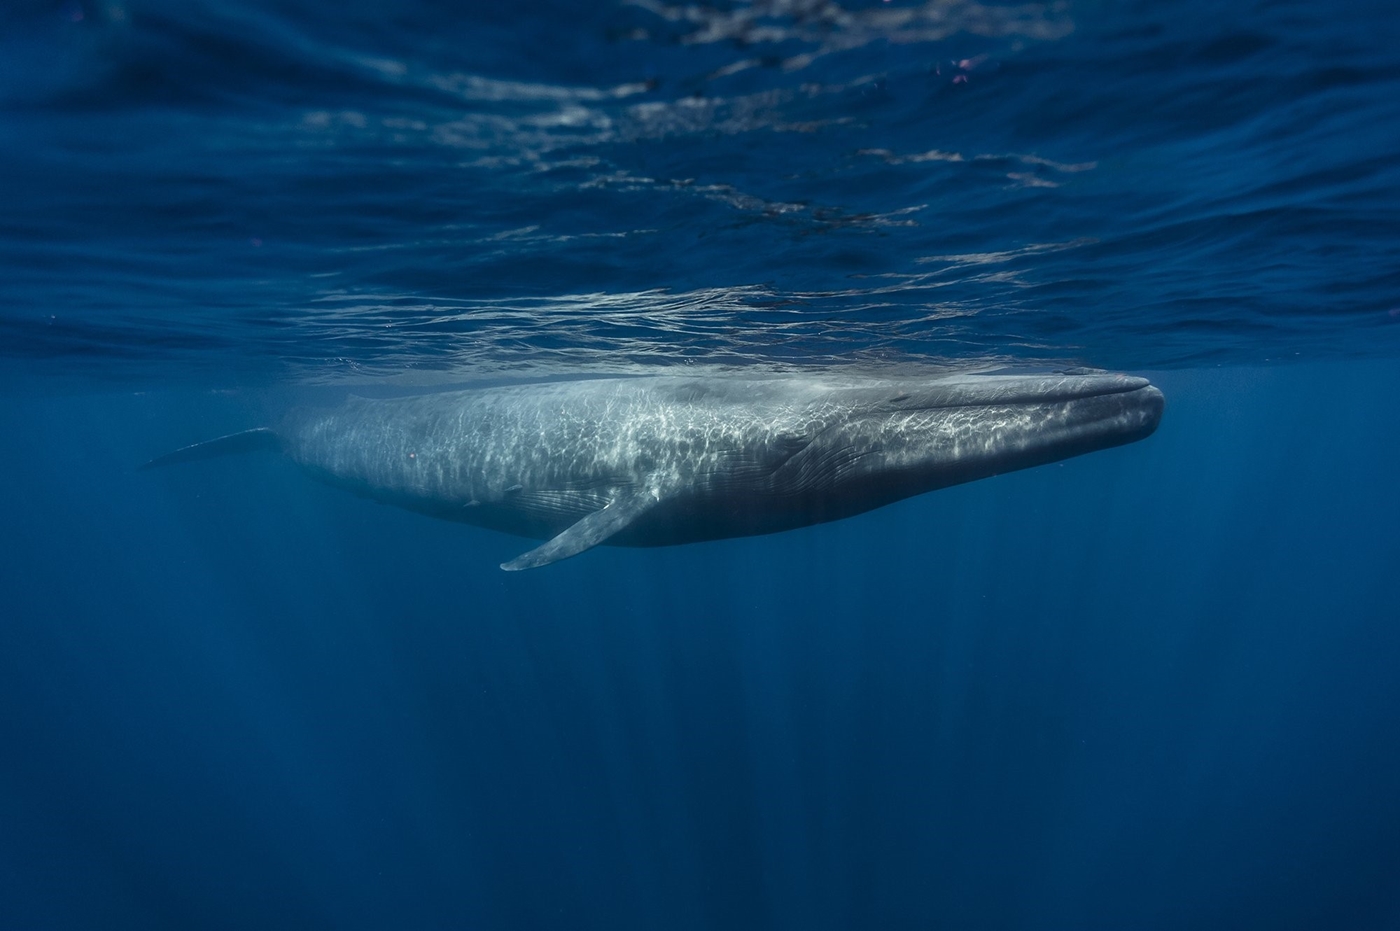 الحوت الأزرق أحد أنواع الكائنات البحرية المهددة بالانقراض